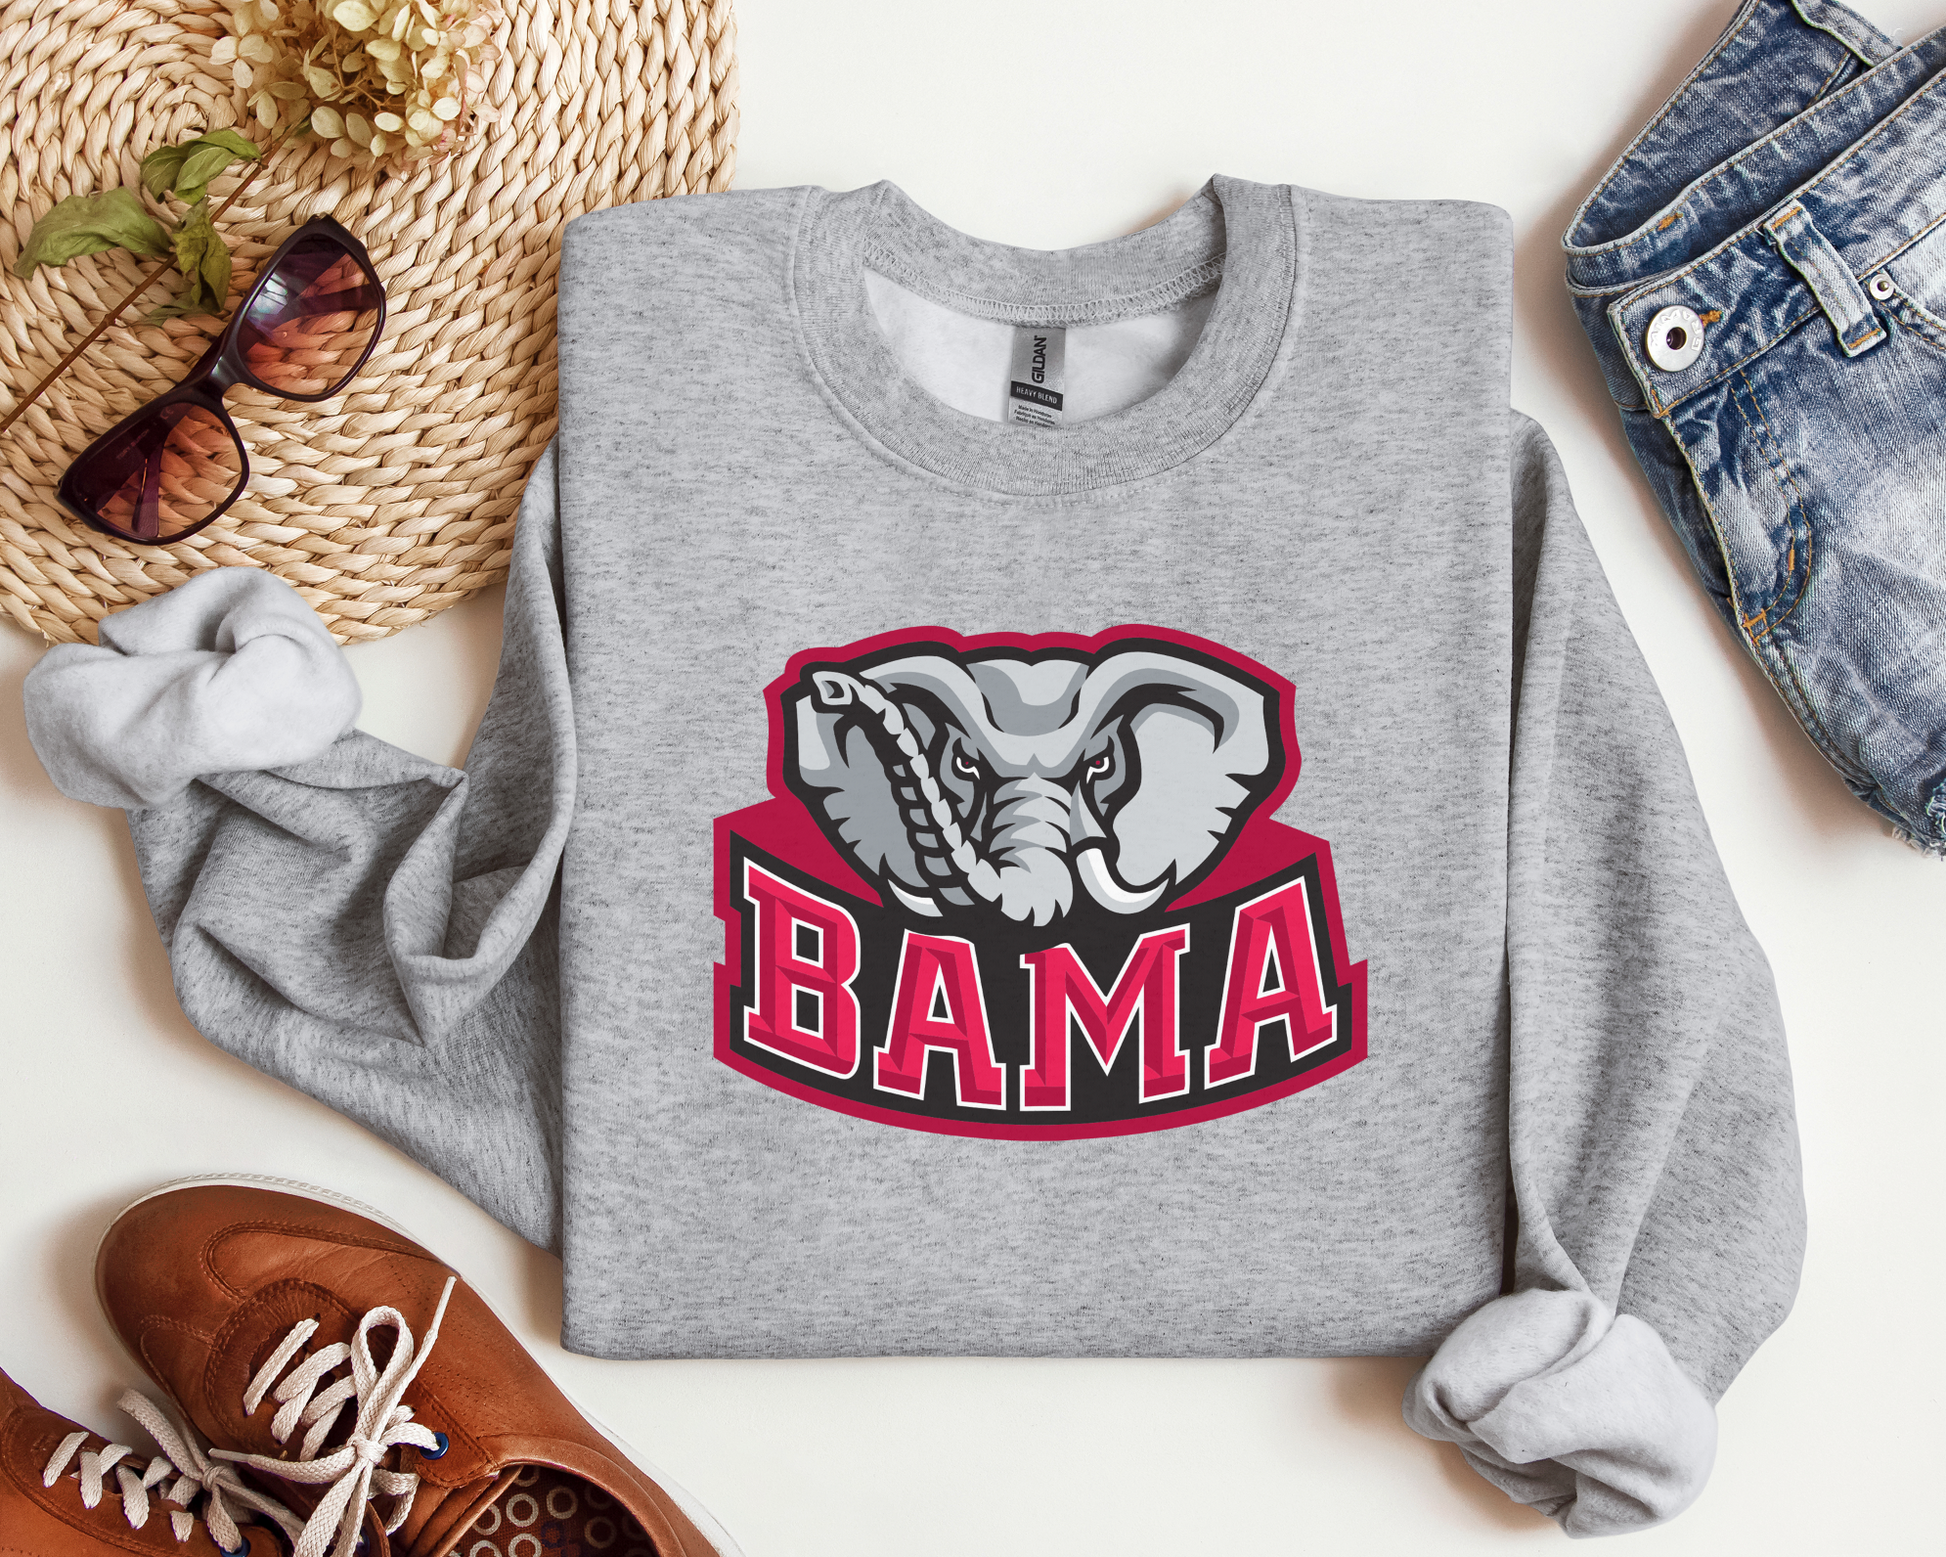 Alabama Hoodie - Alabama Sweatshirt - Bama Hooded Sweatshirt